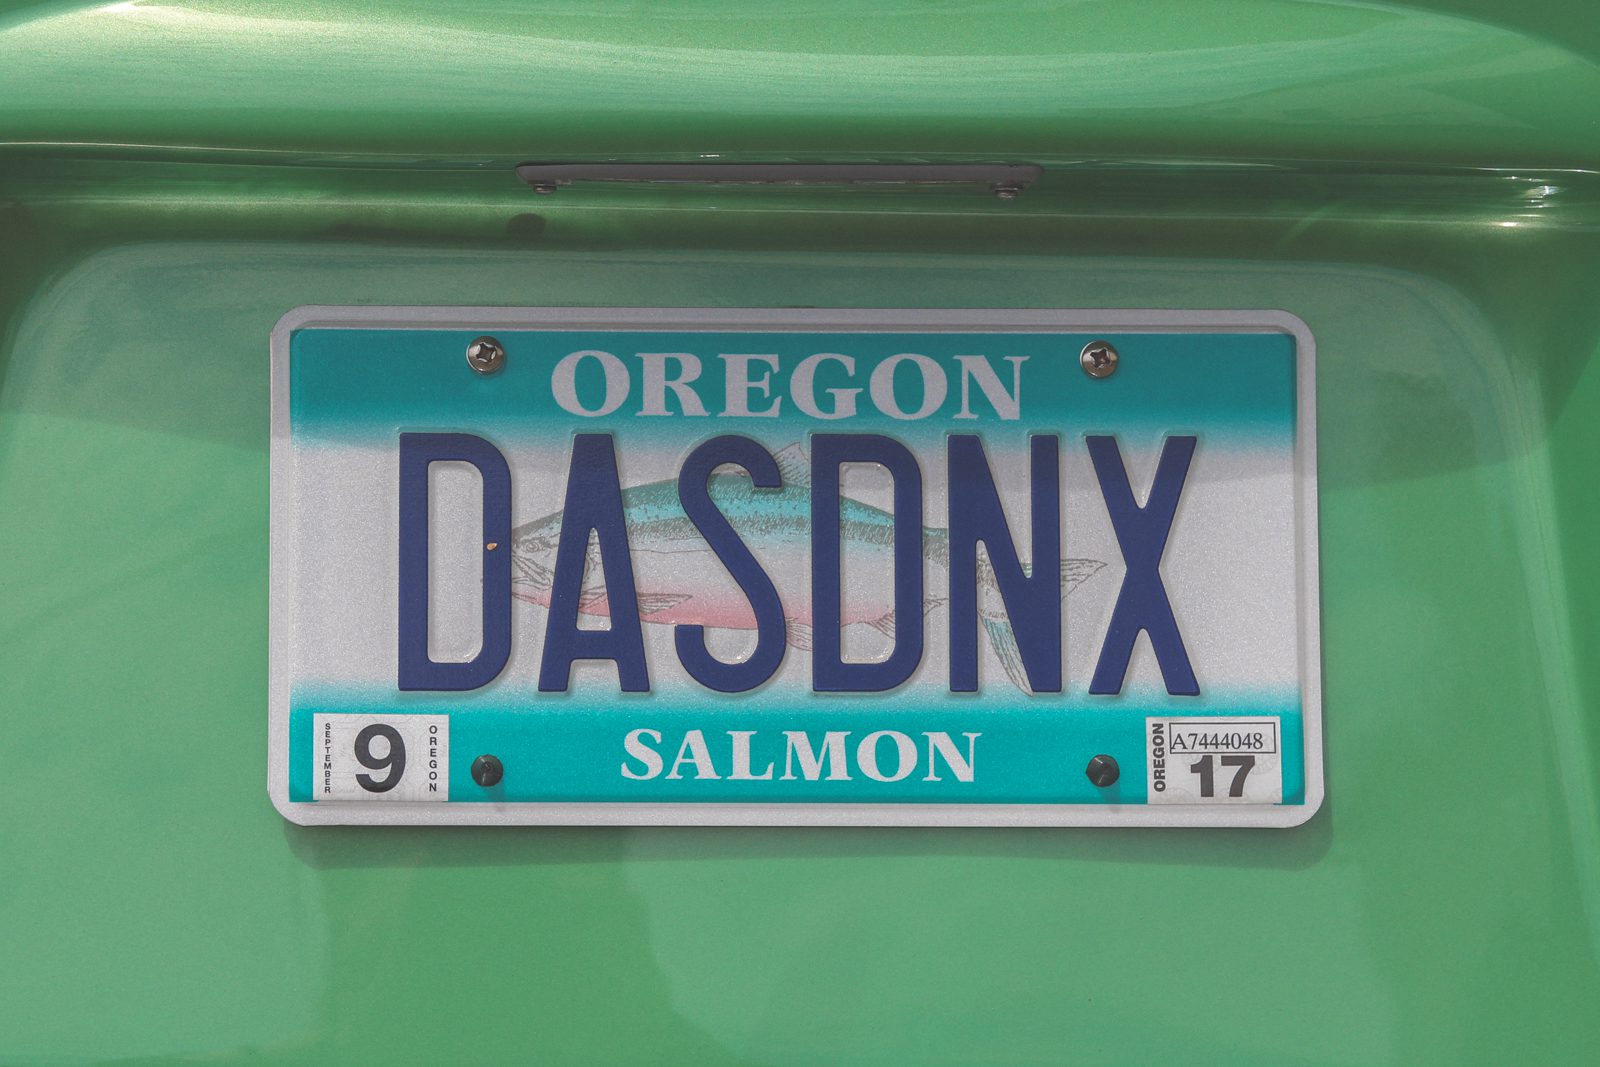 No Dinx Happy Bus License Plate "DASDNX"